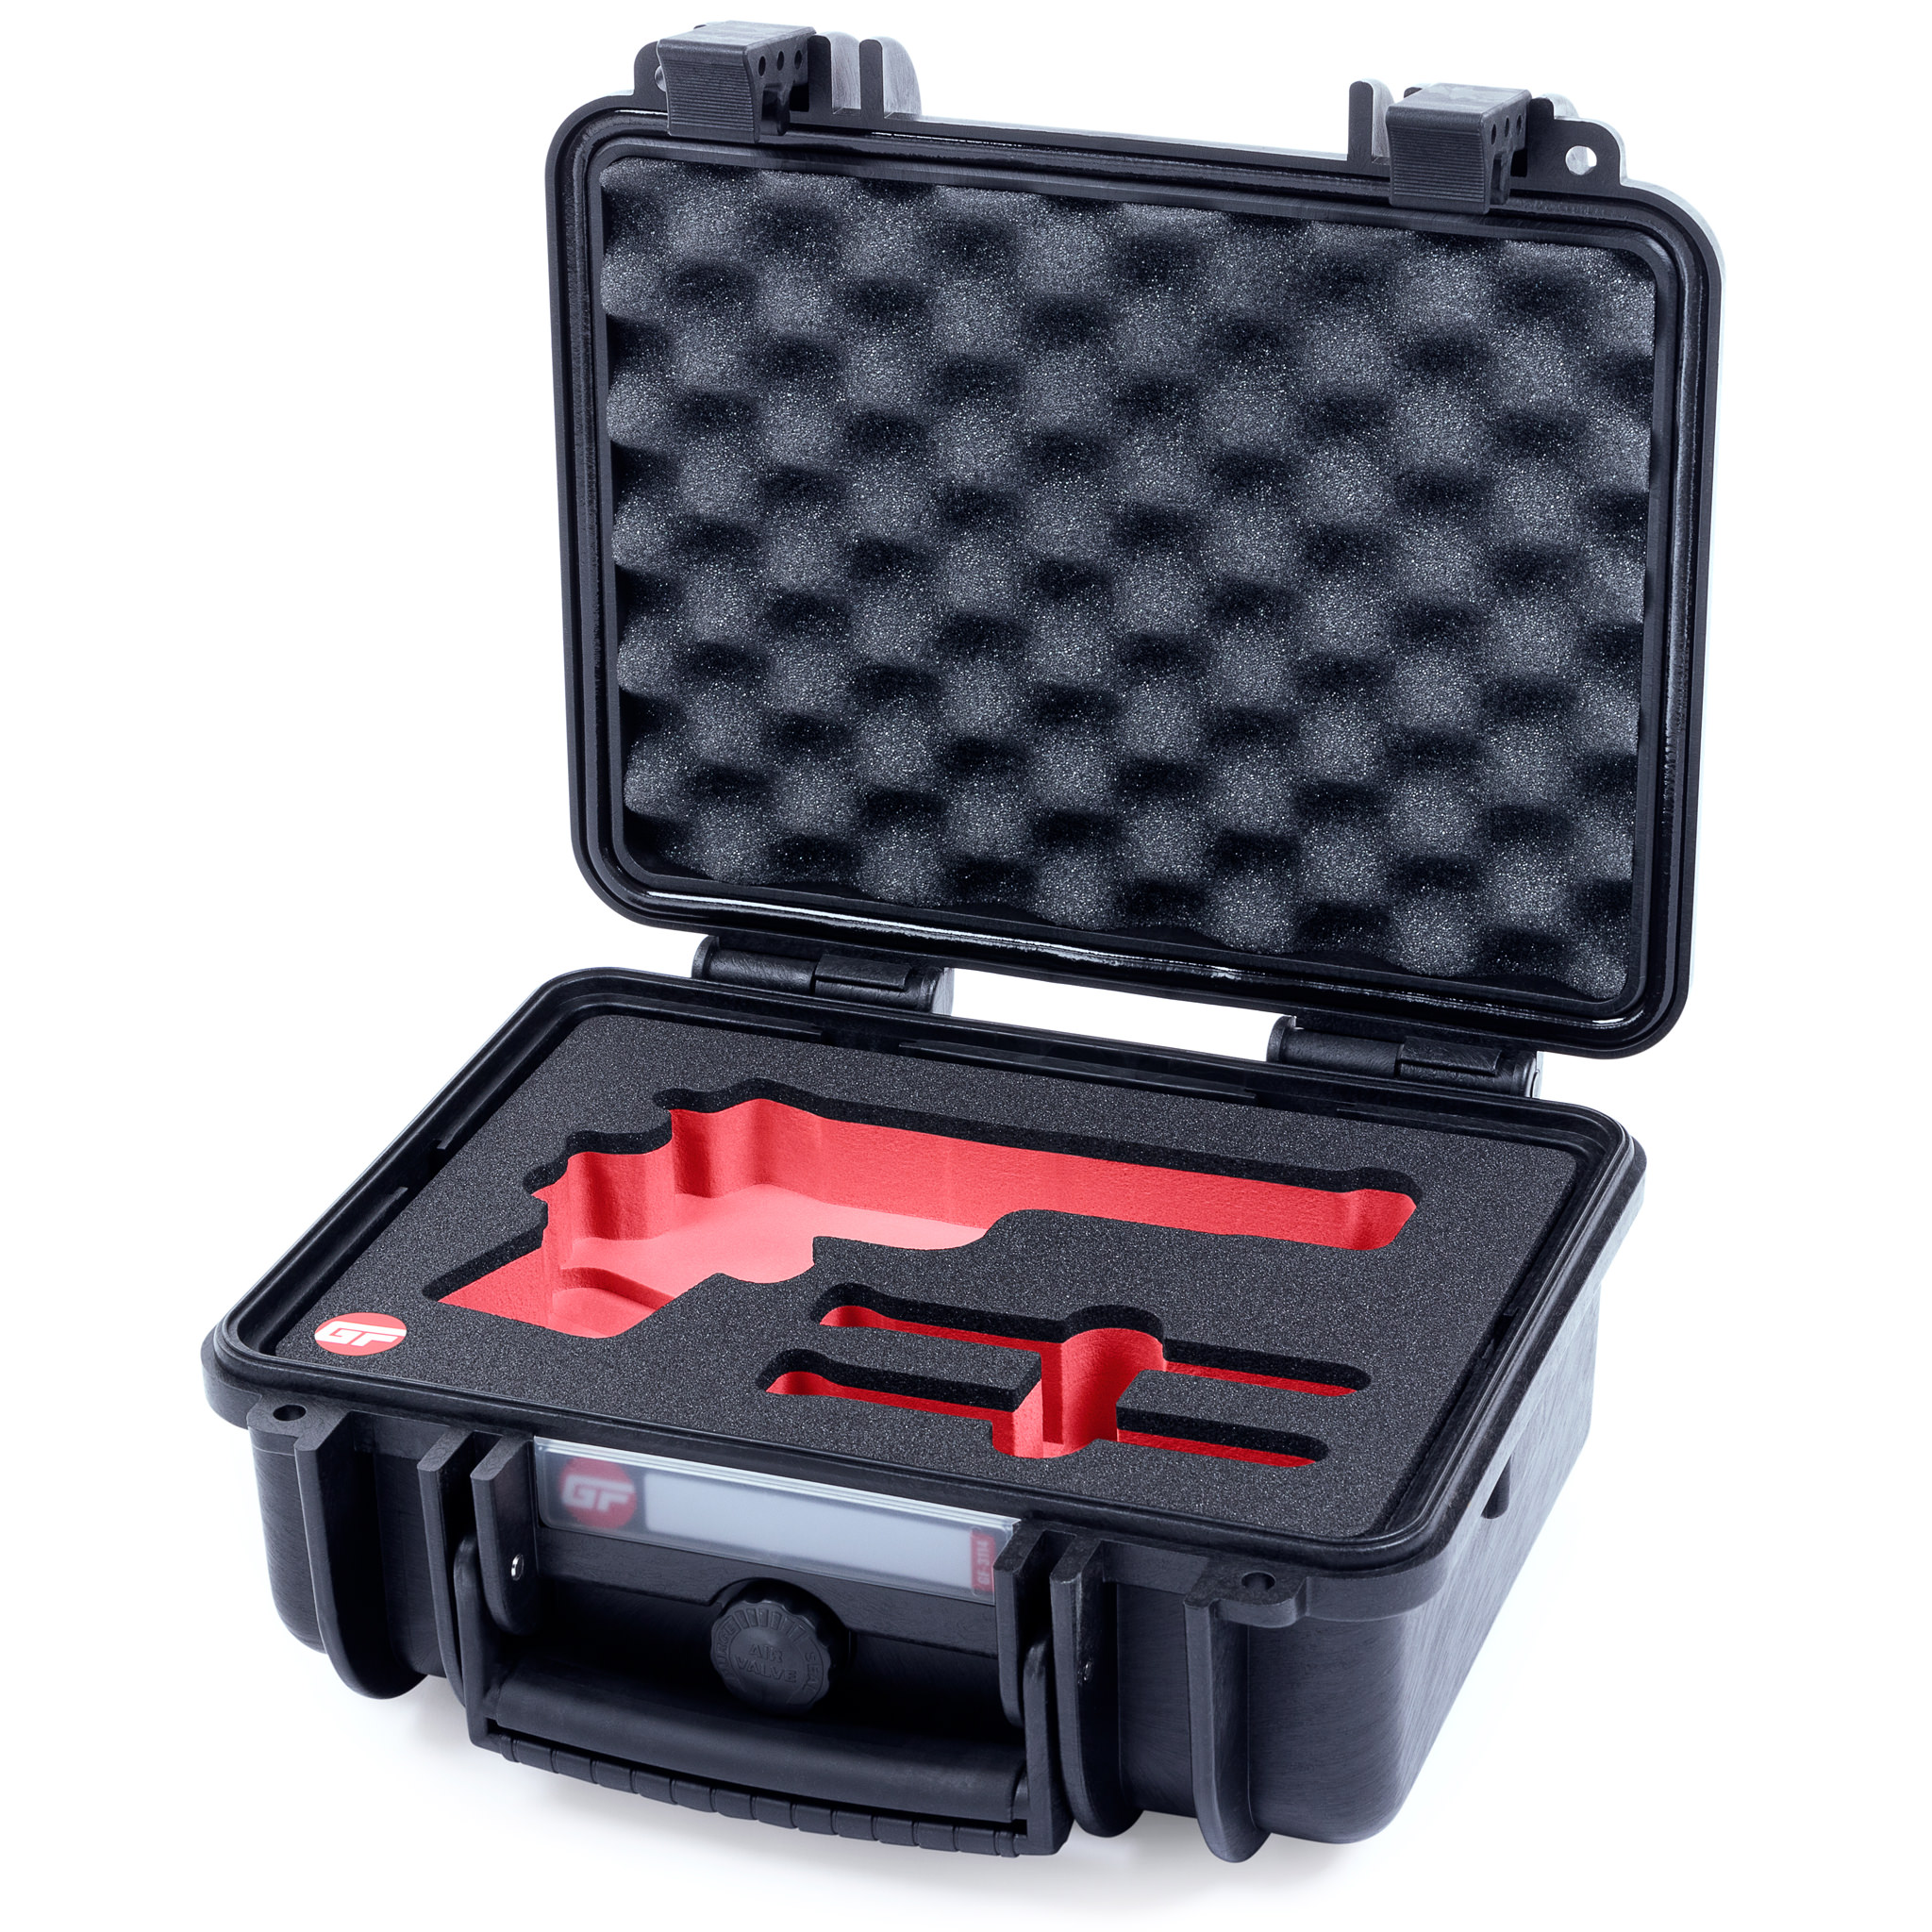 GunFoam GF-1108 Pistol Case Open with Red Custom Foam Insert